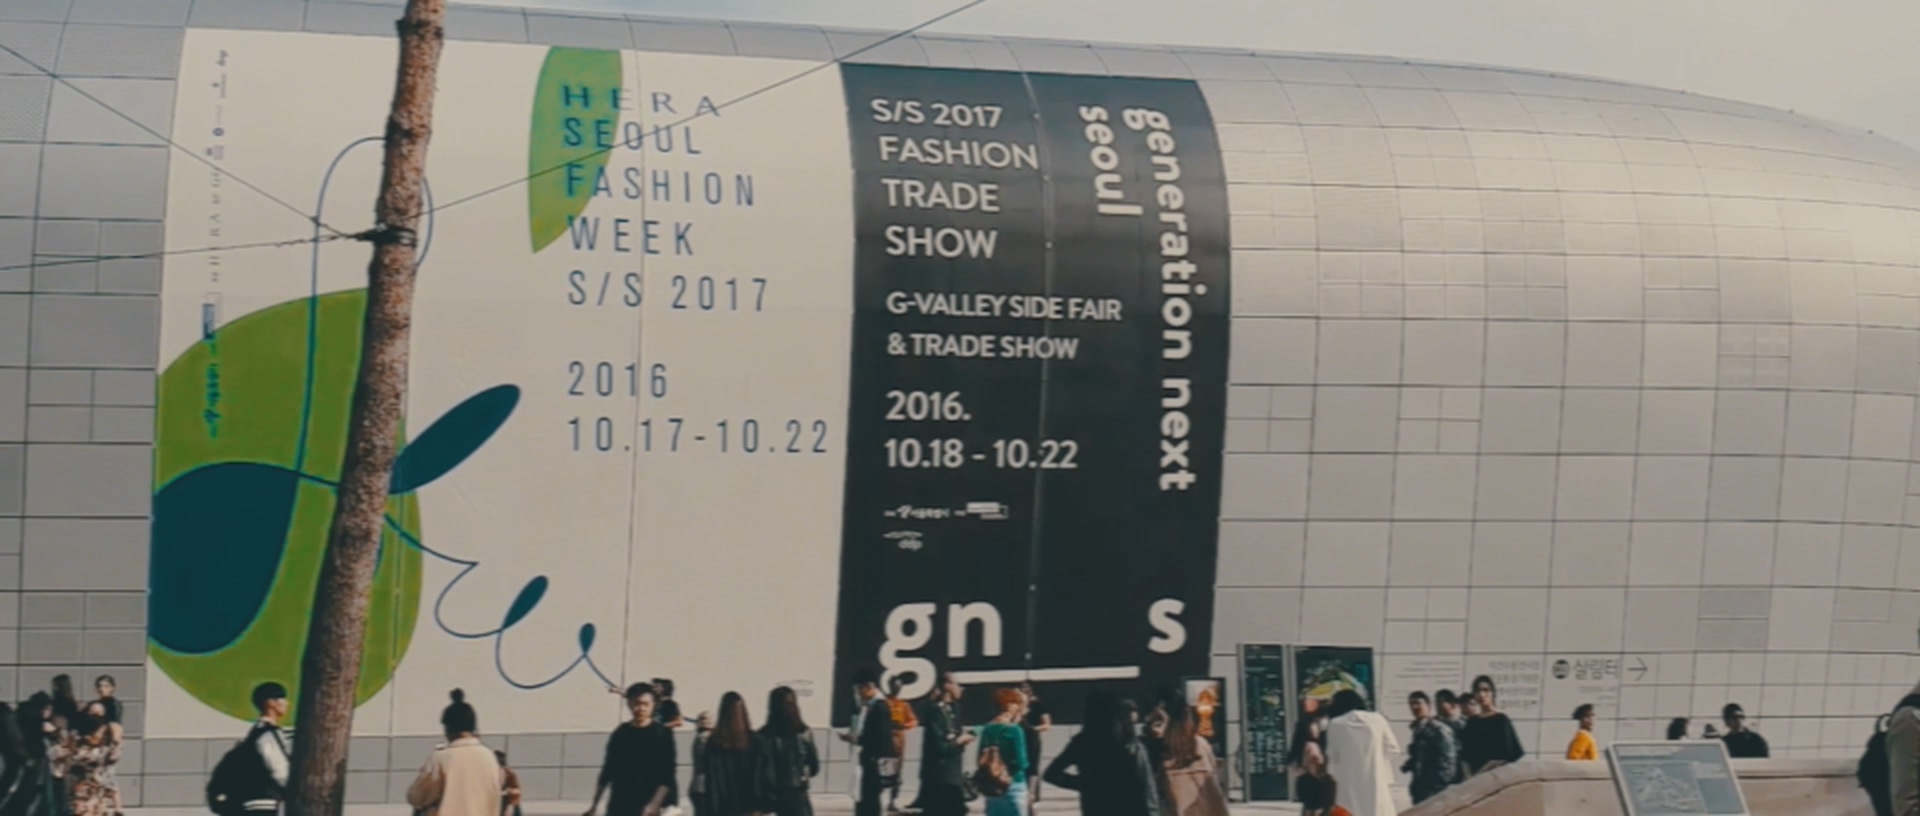 161022 HERA Seoul Fashion Week.mp4_20161023_055133.701.jpg